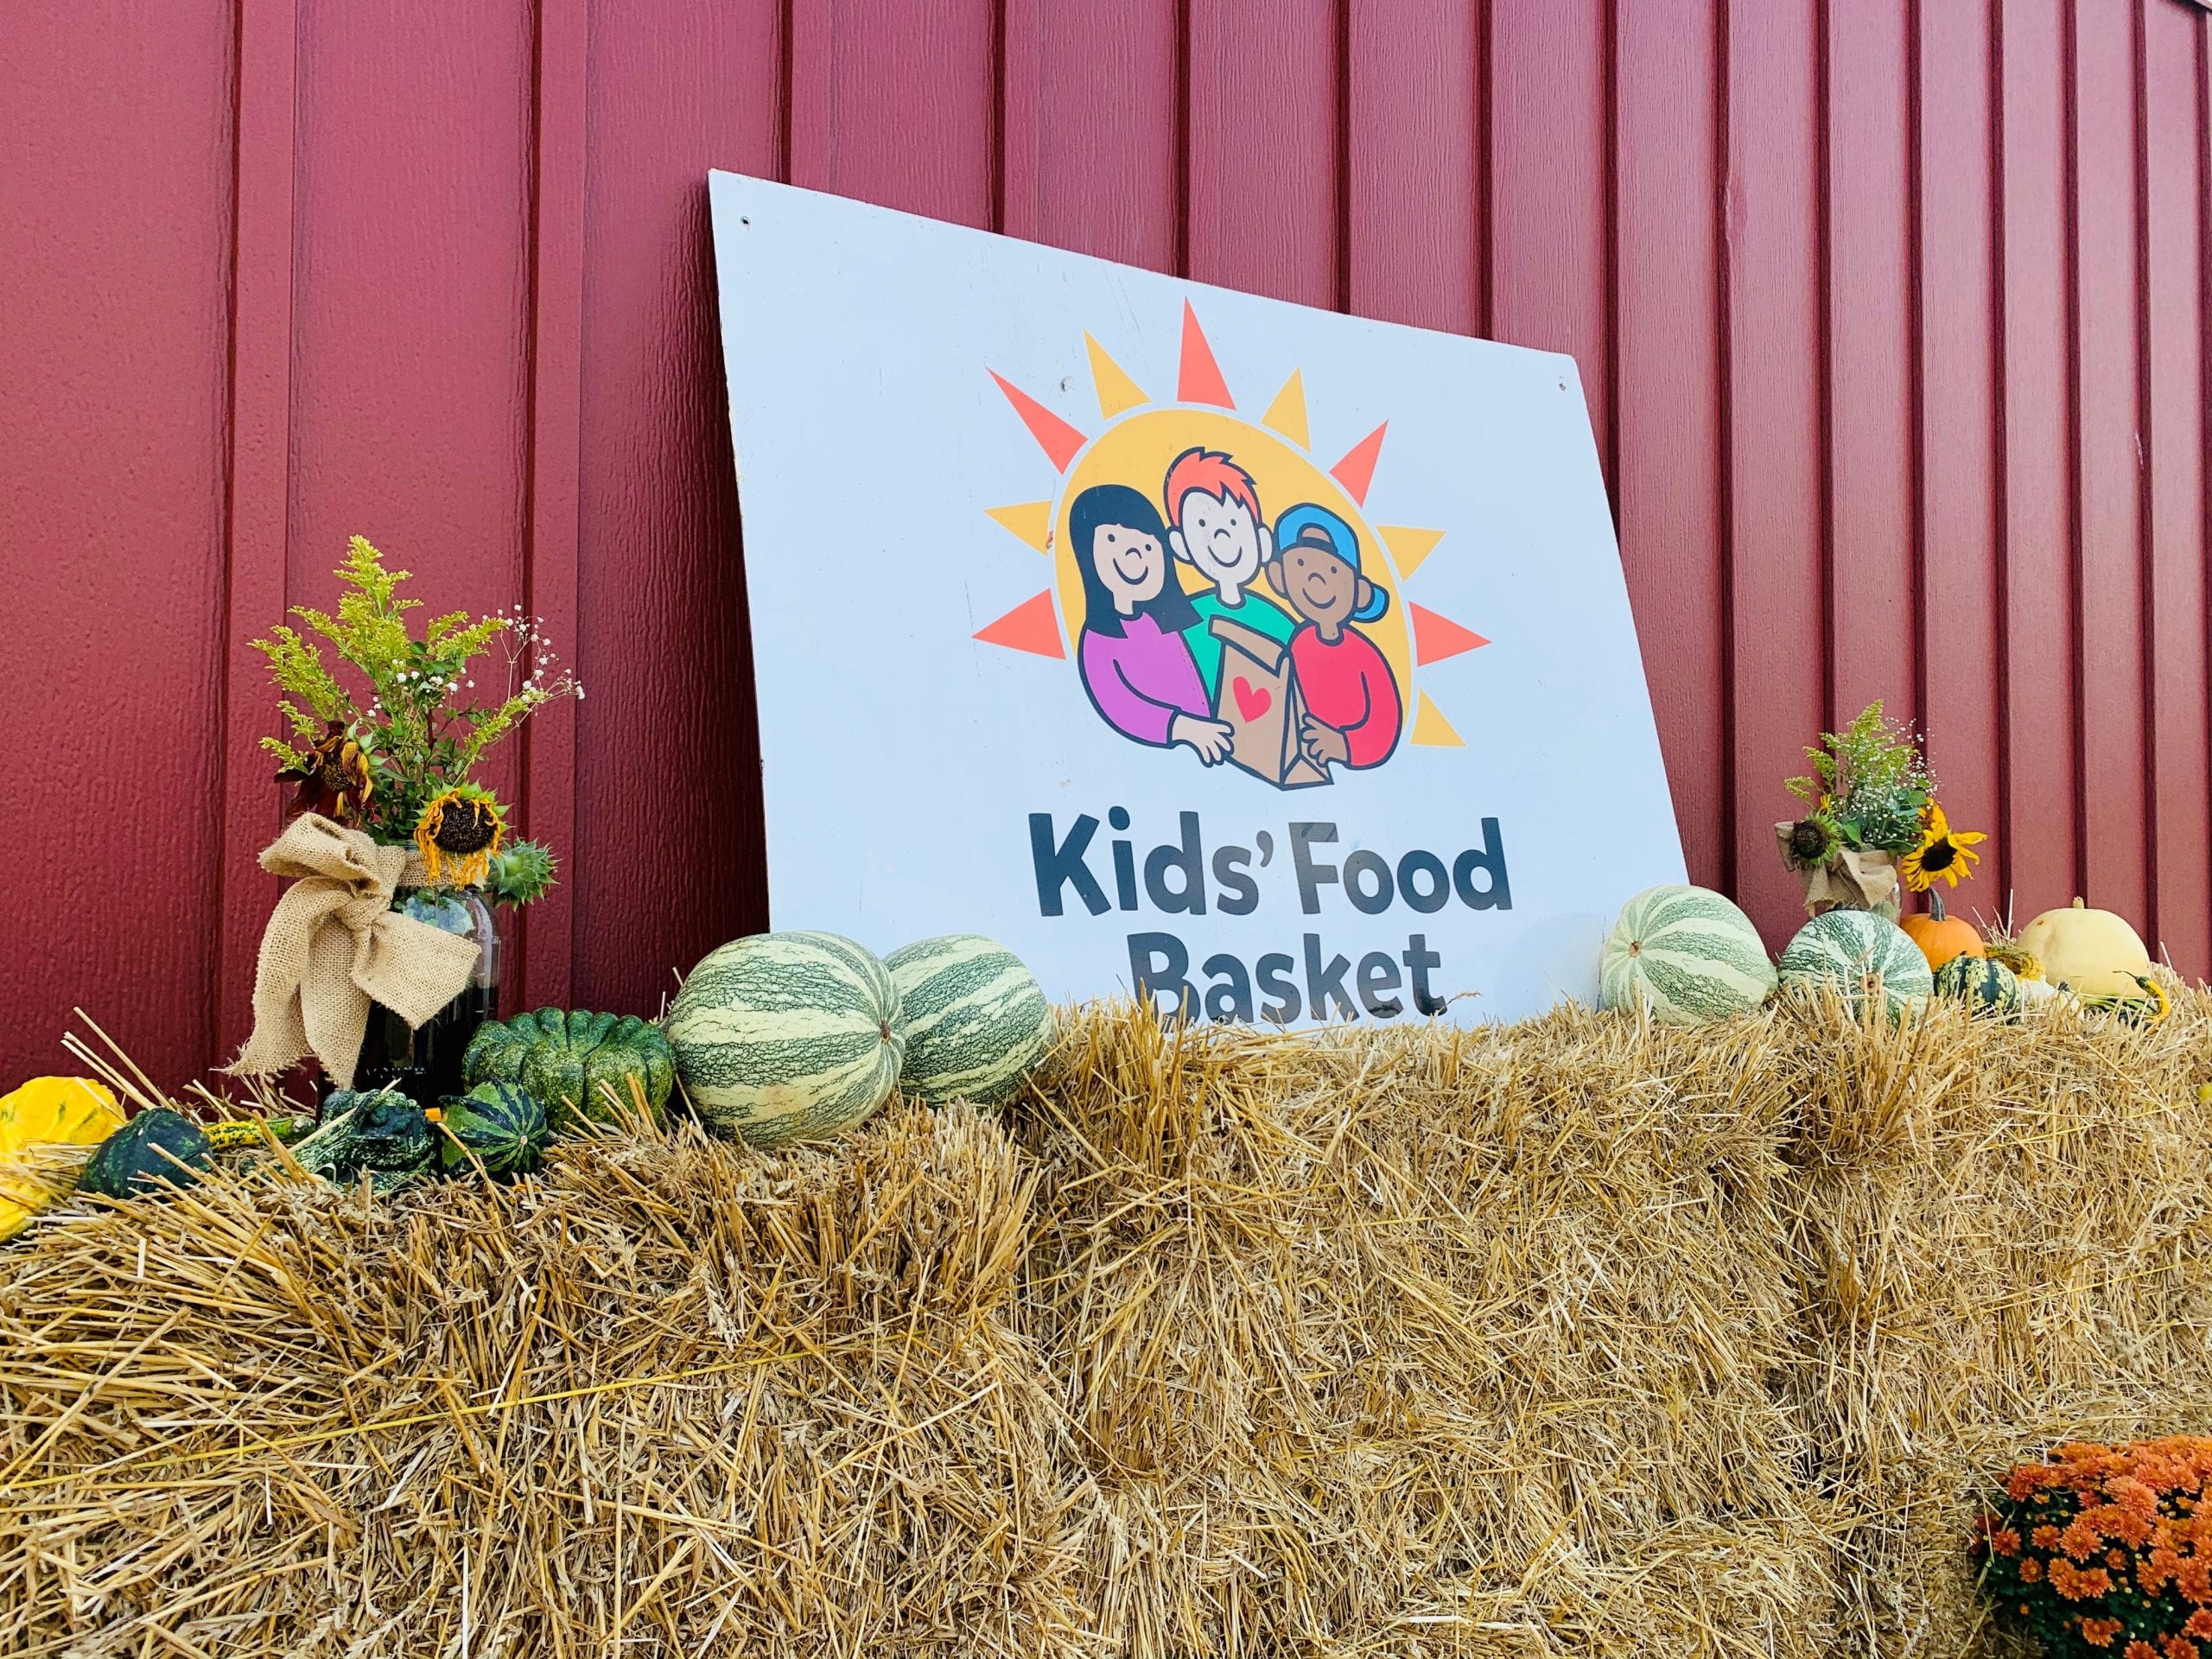 Kids' Food Basket sign